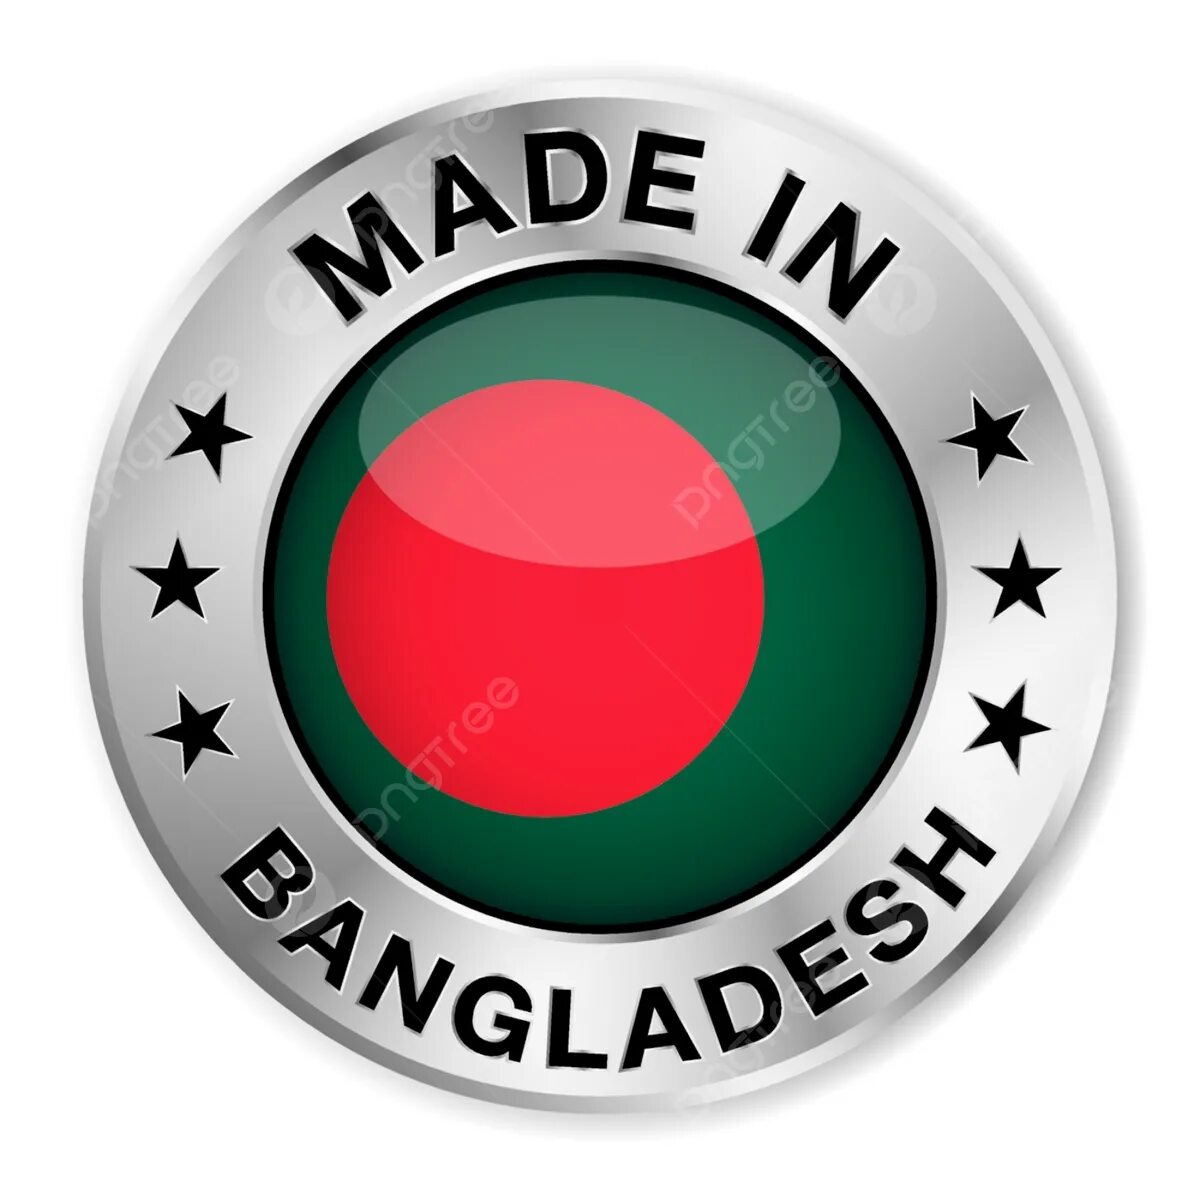 Made in bangladesh. Бангладеш символ. Made in Bangladesh одежда. Made in Bangladesh Страна.